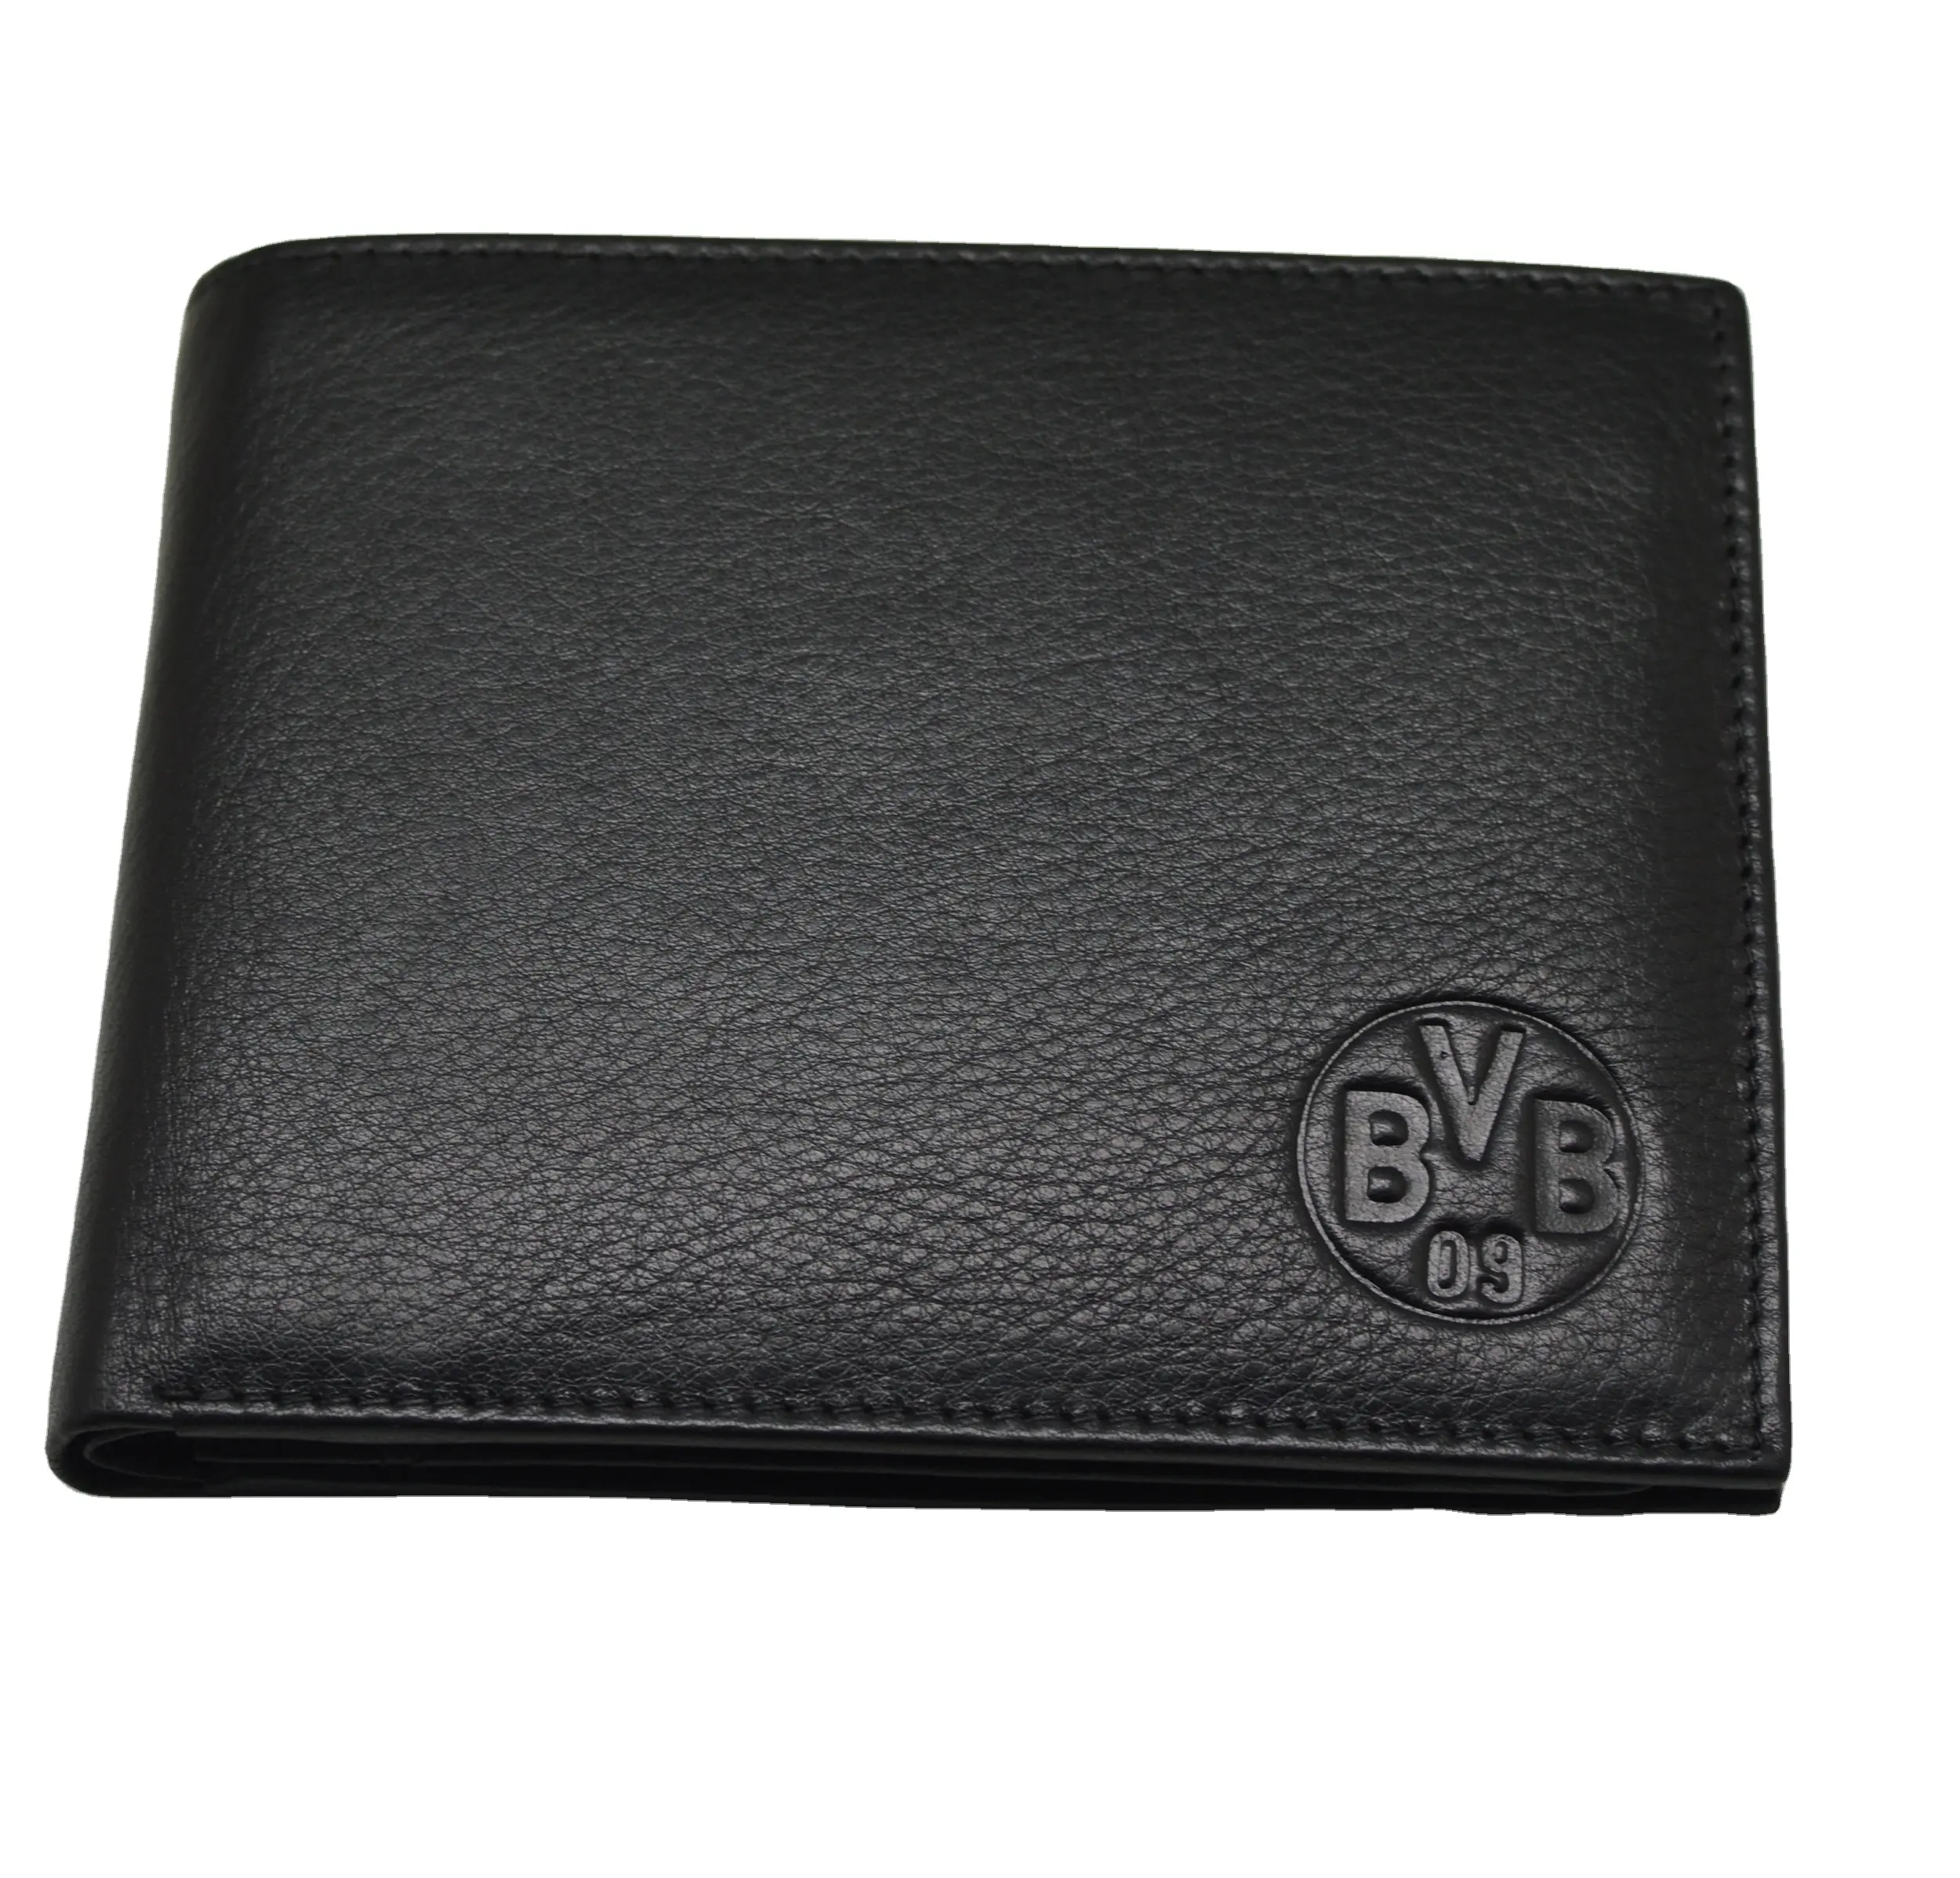 OEM Factory Classy Wallet Echtes Leder Short Herren Trifold Wallets Kreditkarten inhaber Coin Pocket Purse RFID Wallet